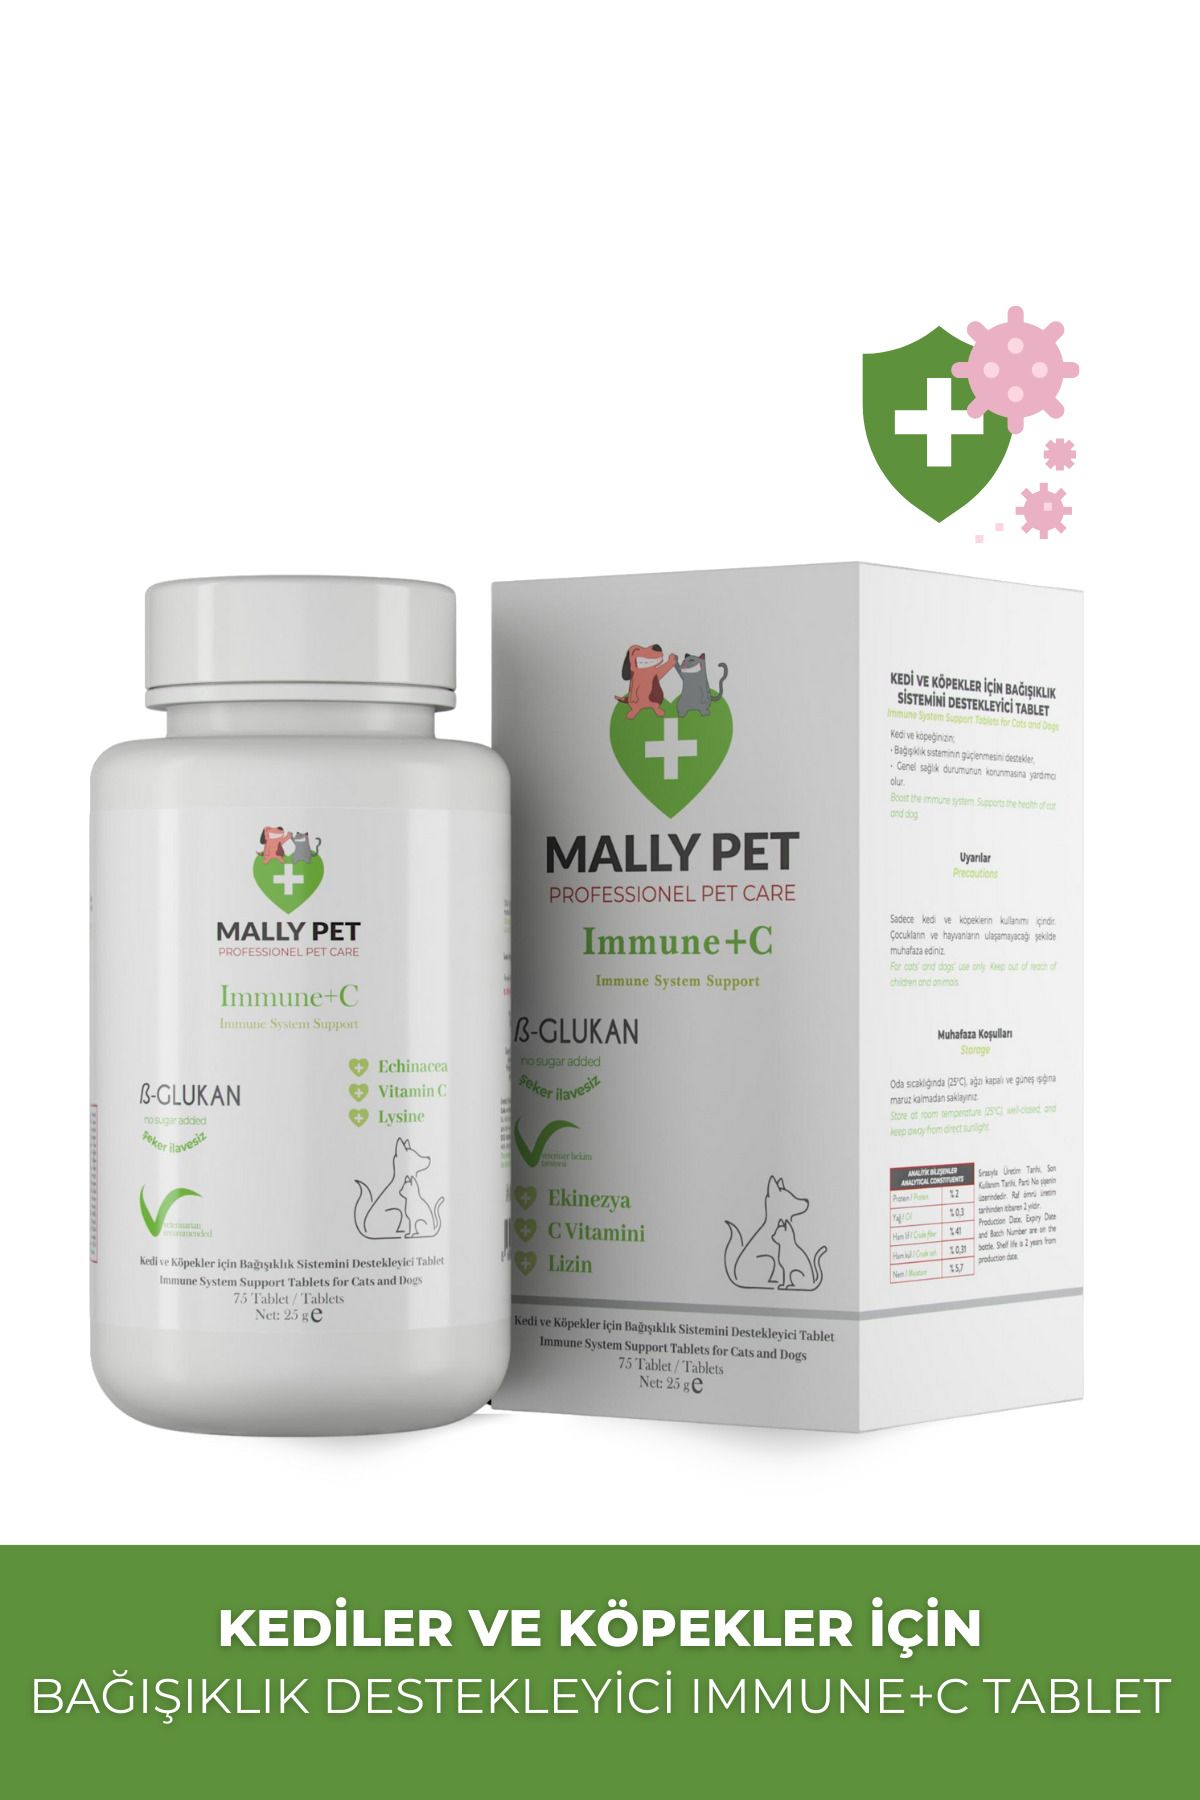 MALLY PET PROFESSIONEL PET CARE Kedi Ve Köpekler Için Bağışıklık Sistemini Güçlendirici Immune C 75 Tablet